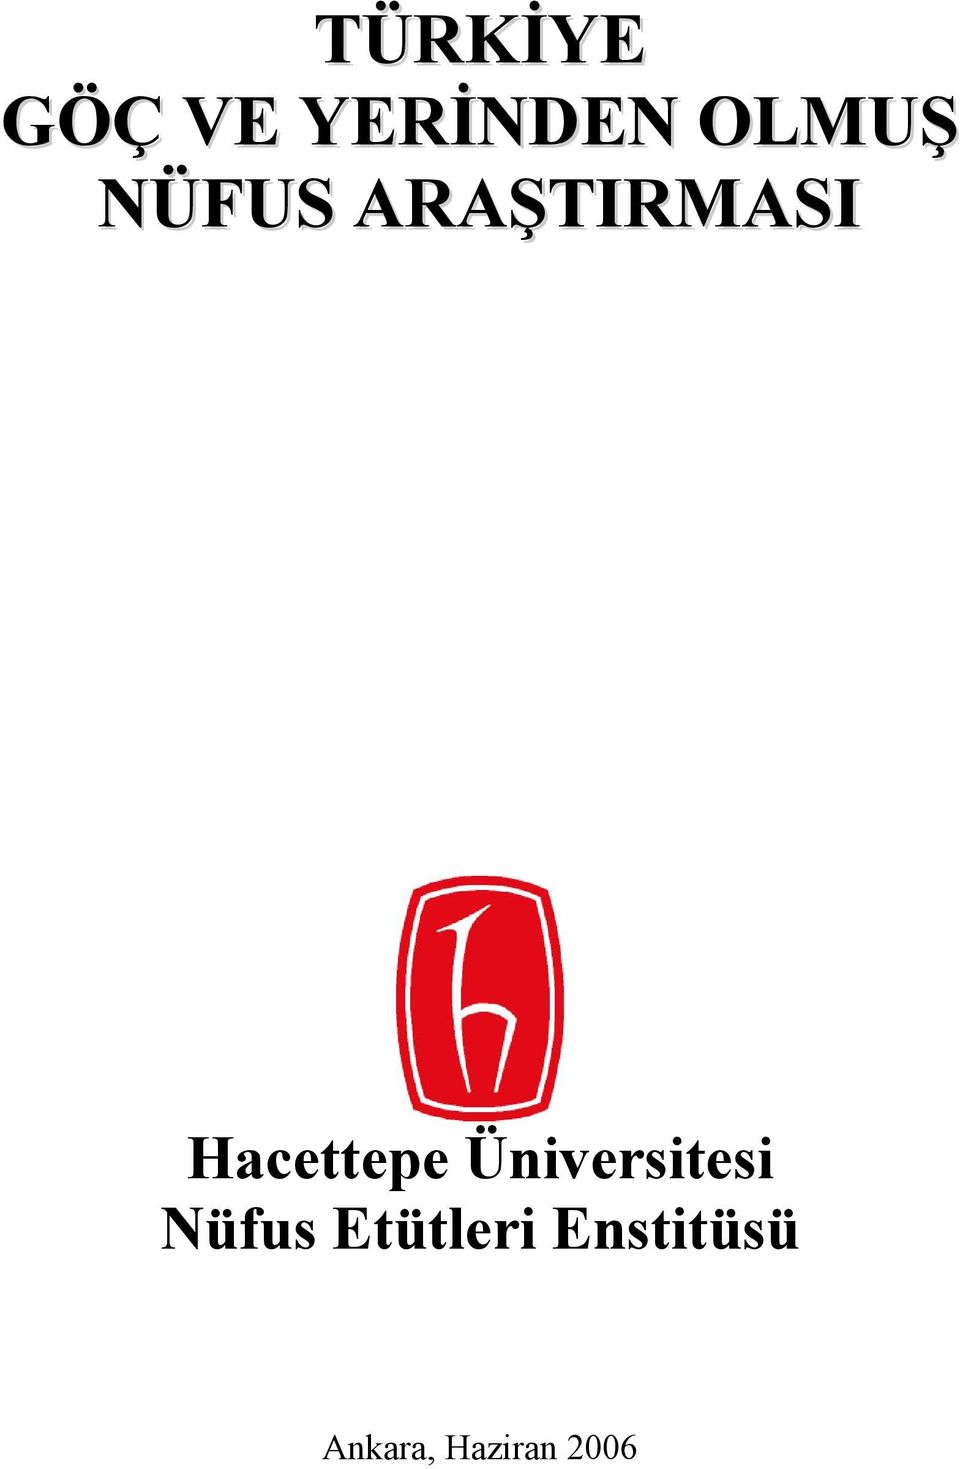 Hacettepe Üniversitesi Nüfus